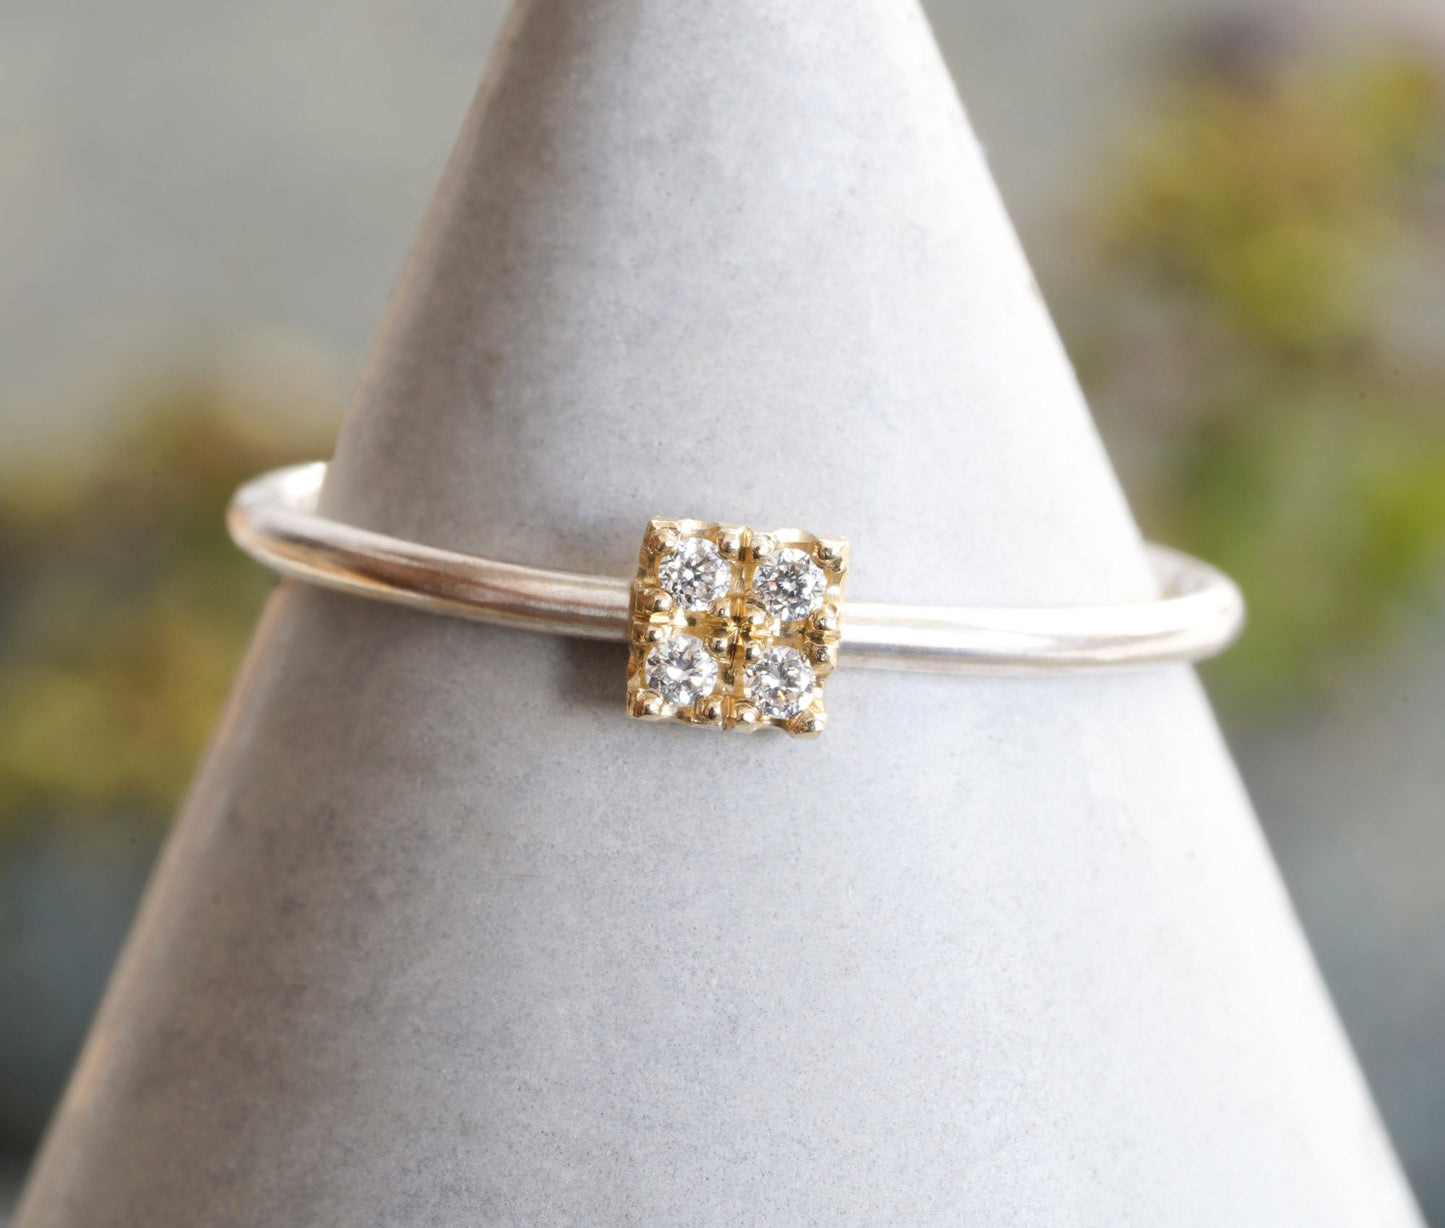 4 Diamonds Engagement Ring, Pave Diamond Engagement Ring, Square Diamond Ring, Mixed Metal Diamond Ring